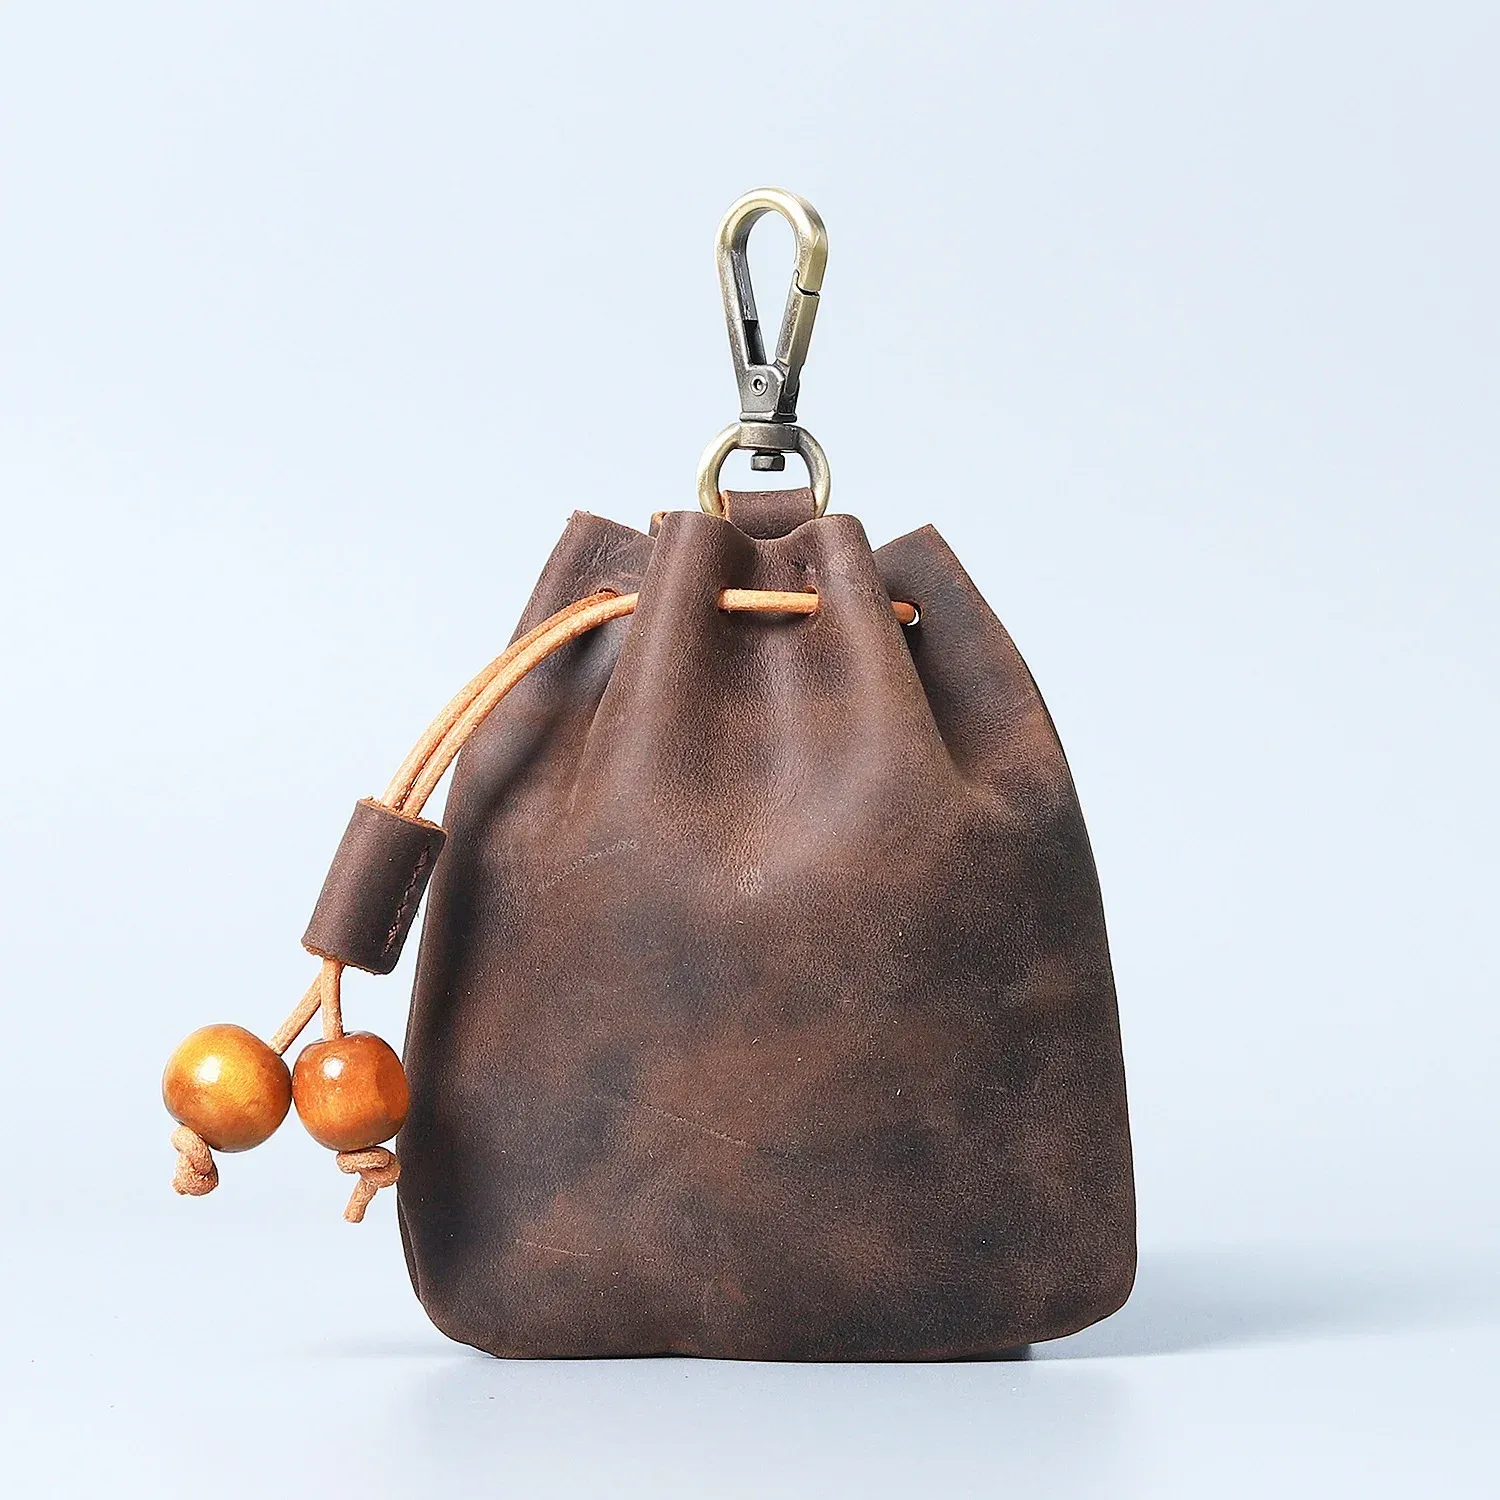 Sac à main artisanale en cuir authentique unisexe sac à main Pocket argent portable avec hameçon en métal.